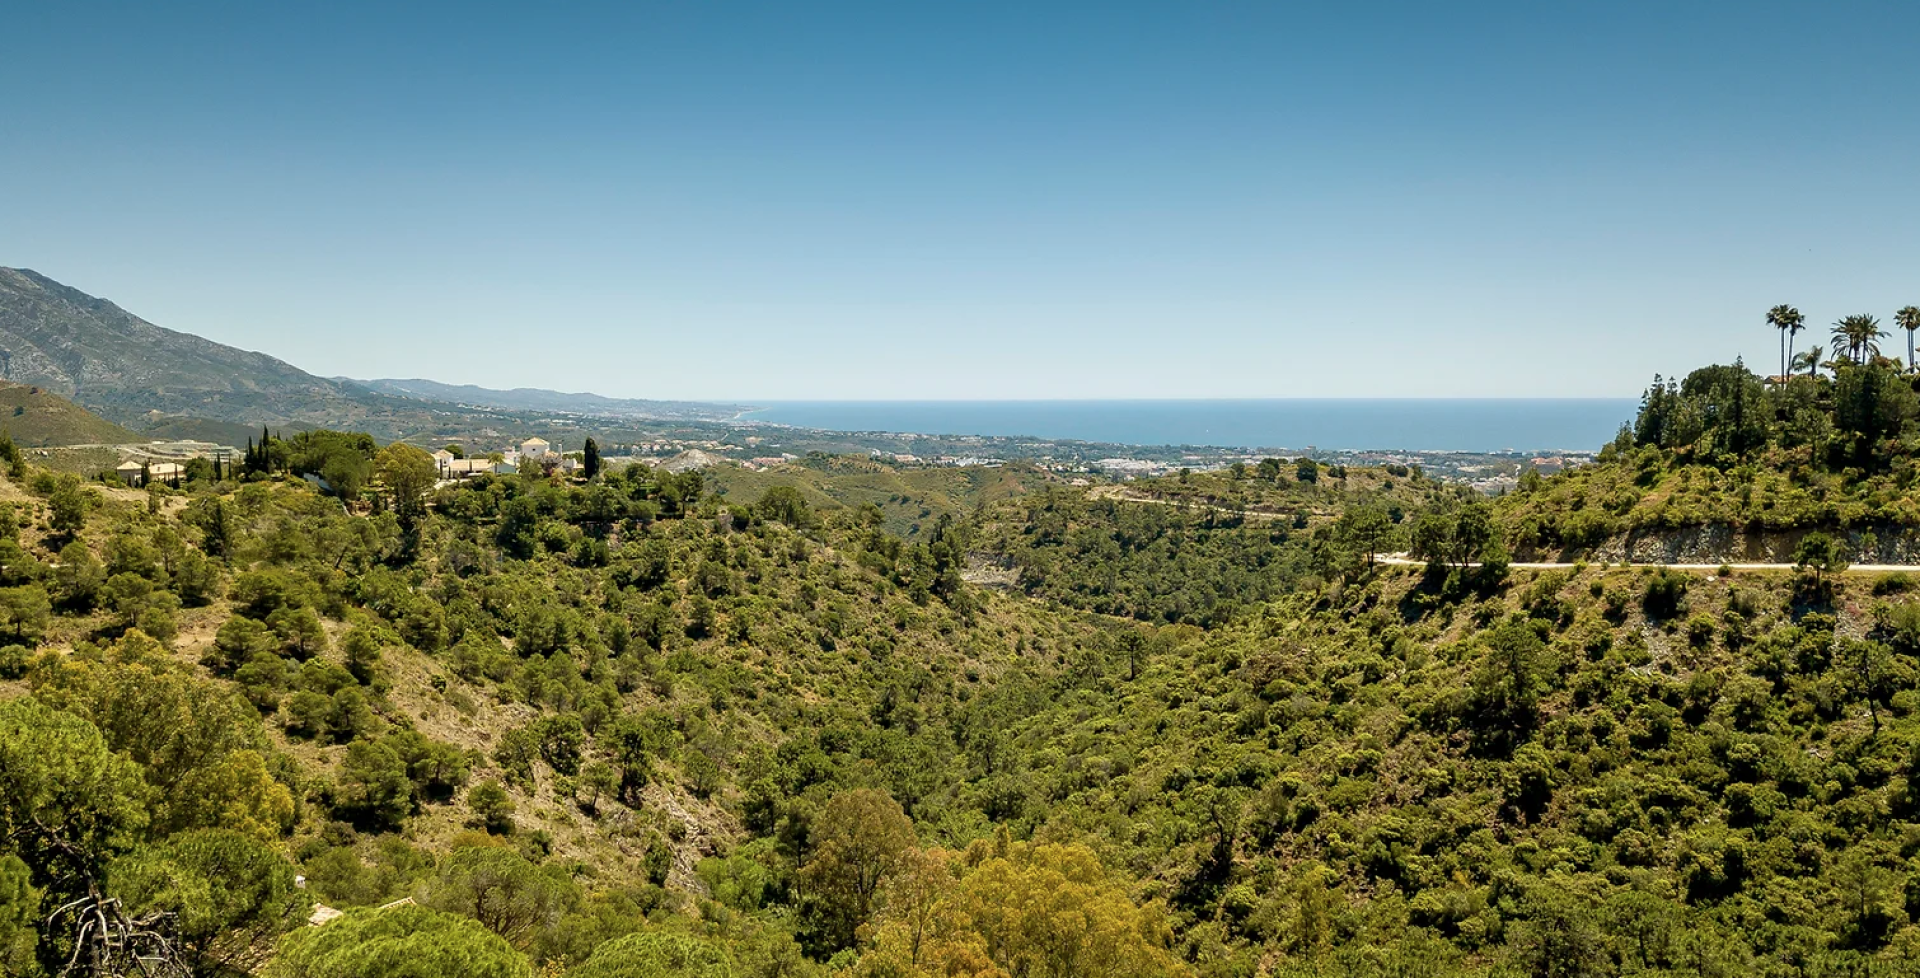 Villa Rosa Marbella sea views